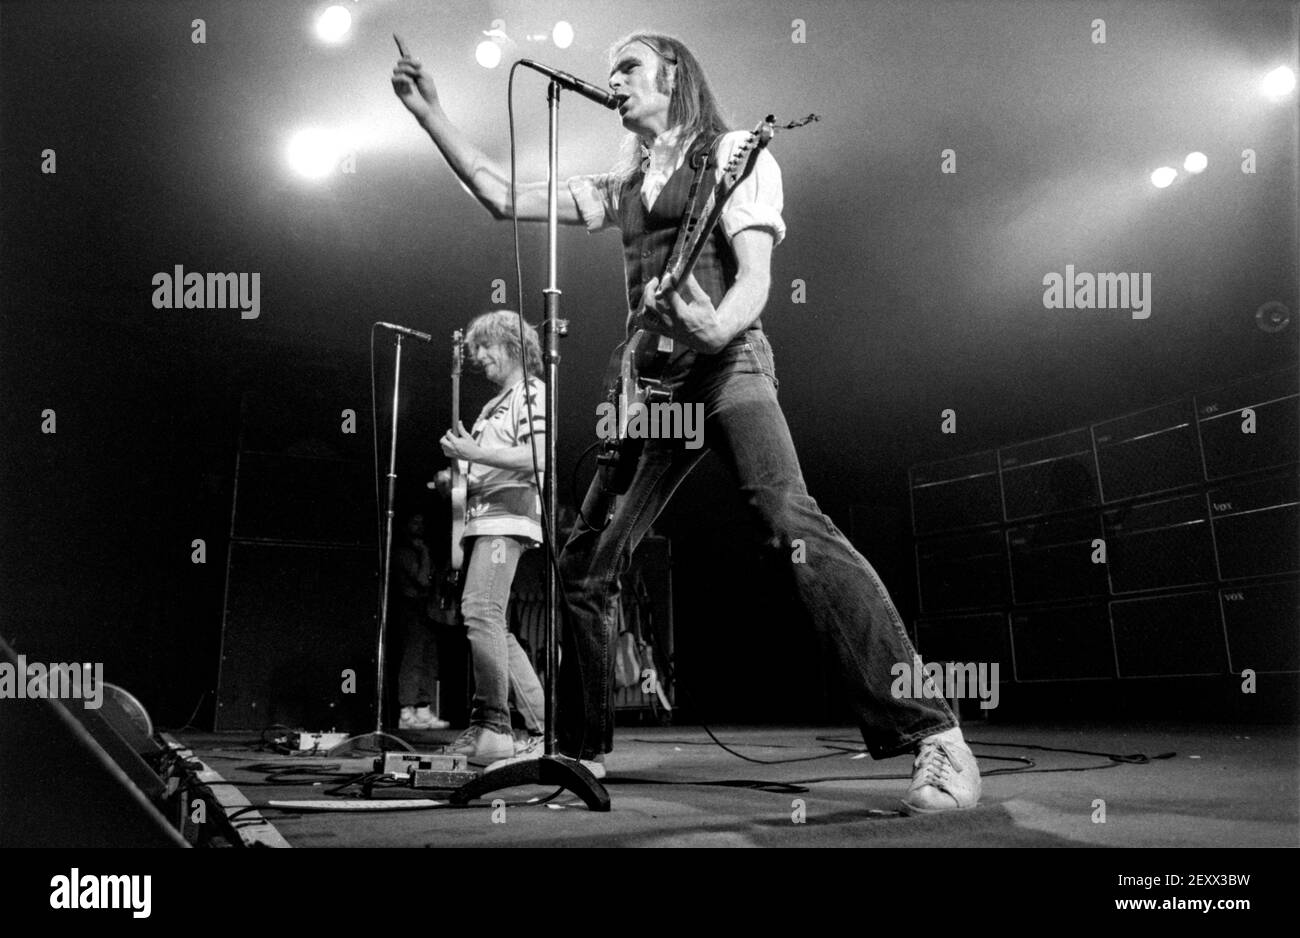 ZWOLLE, PAÍSES BAJOS - 08 DE MAYO de 1984: Status Quo en vivo en el escenario durante un concierto en los países Bajos. Foto de stock